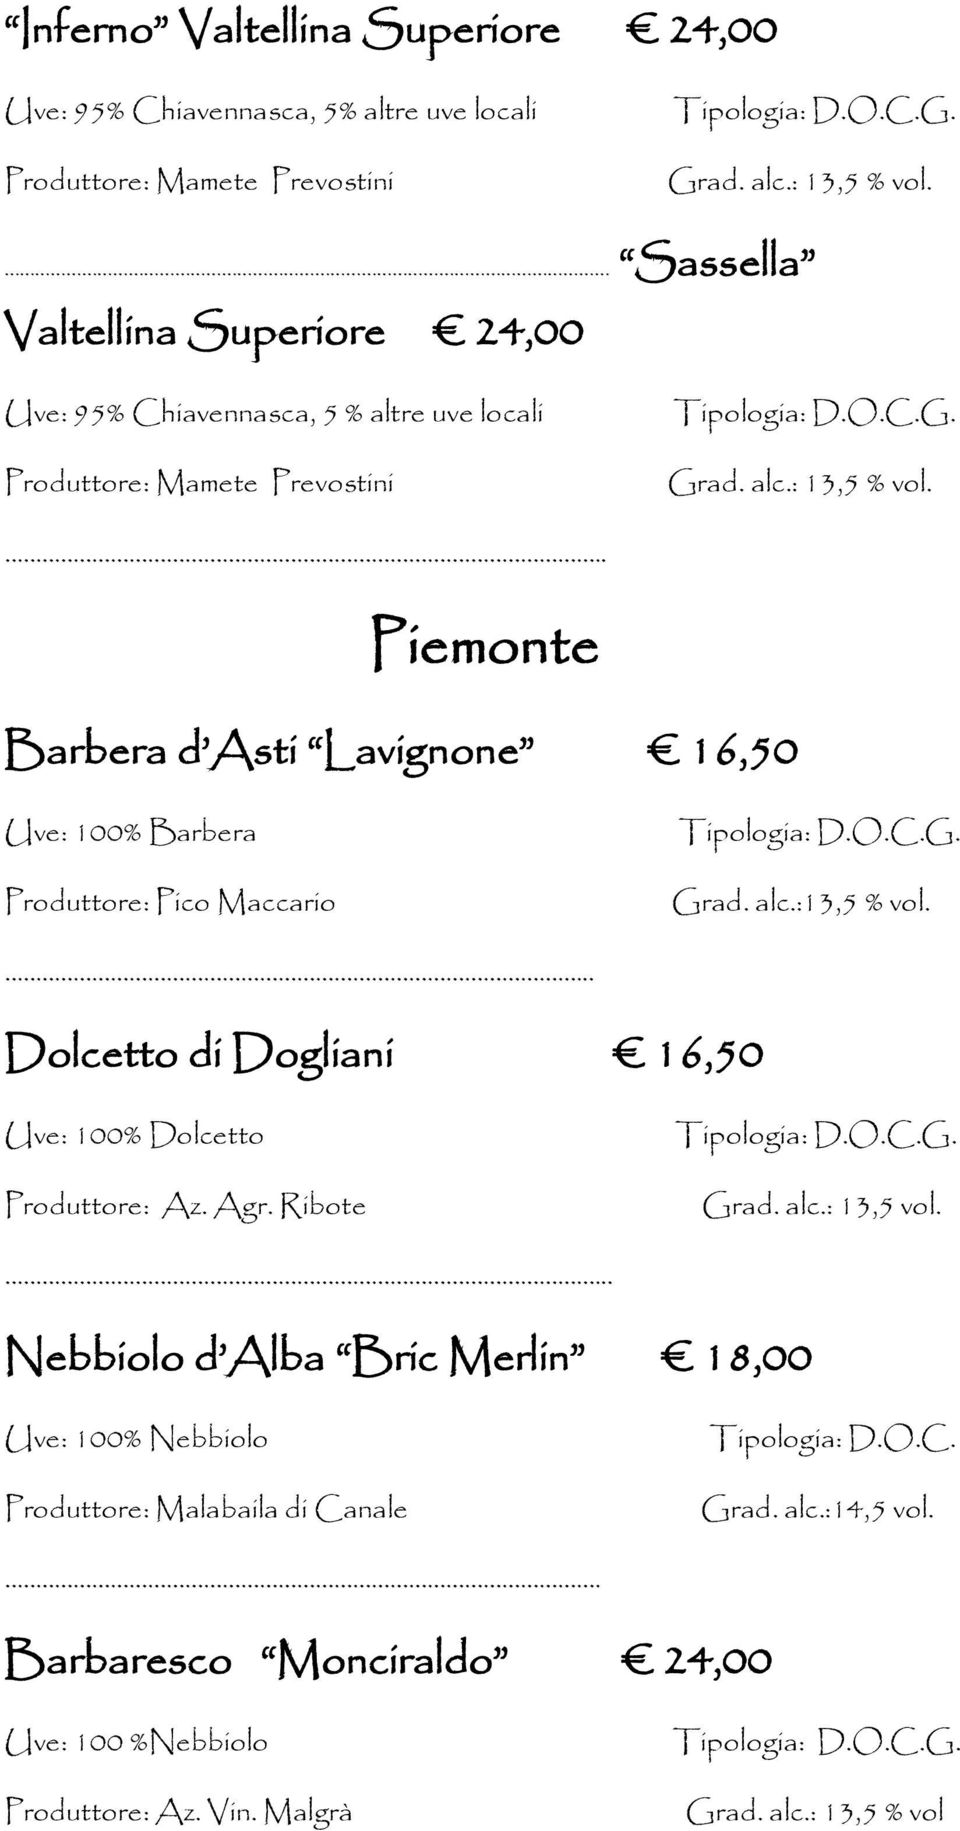 . Piemonte Barbera d Asti Lavignone 16,50 Uve: 100% Barbera Produttore: Pico Maccario G. Grad. alc.:13,5 % vol.